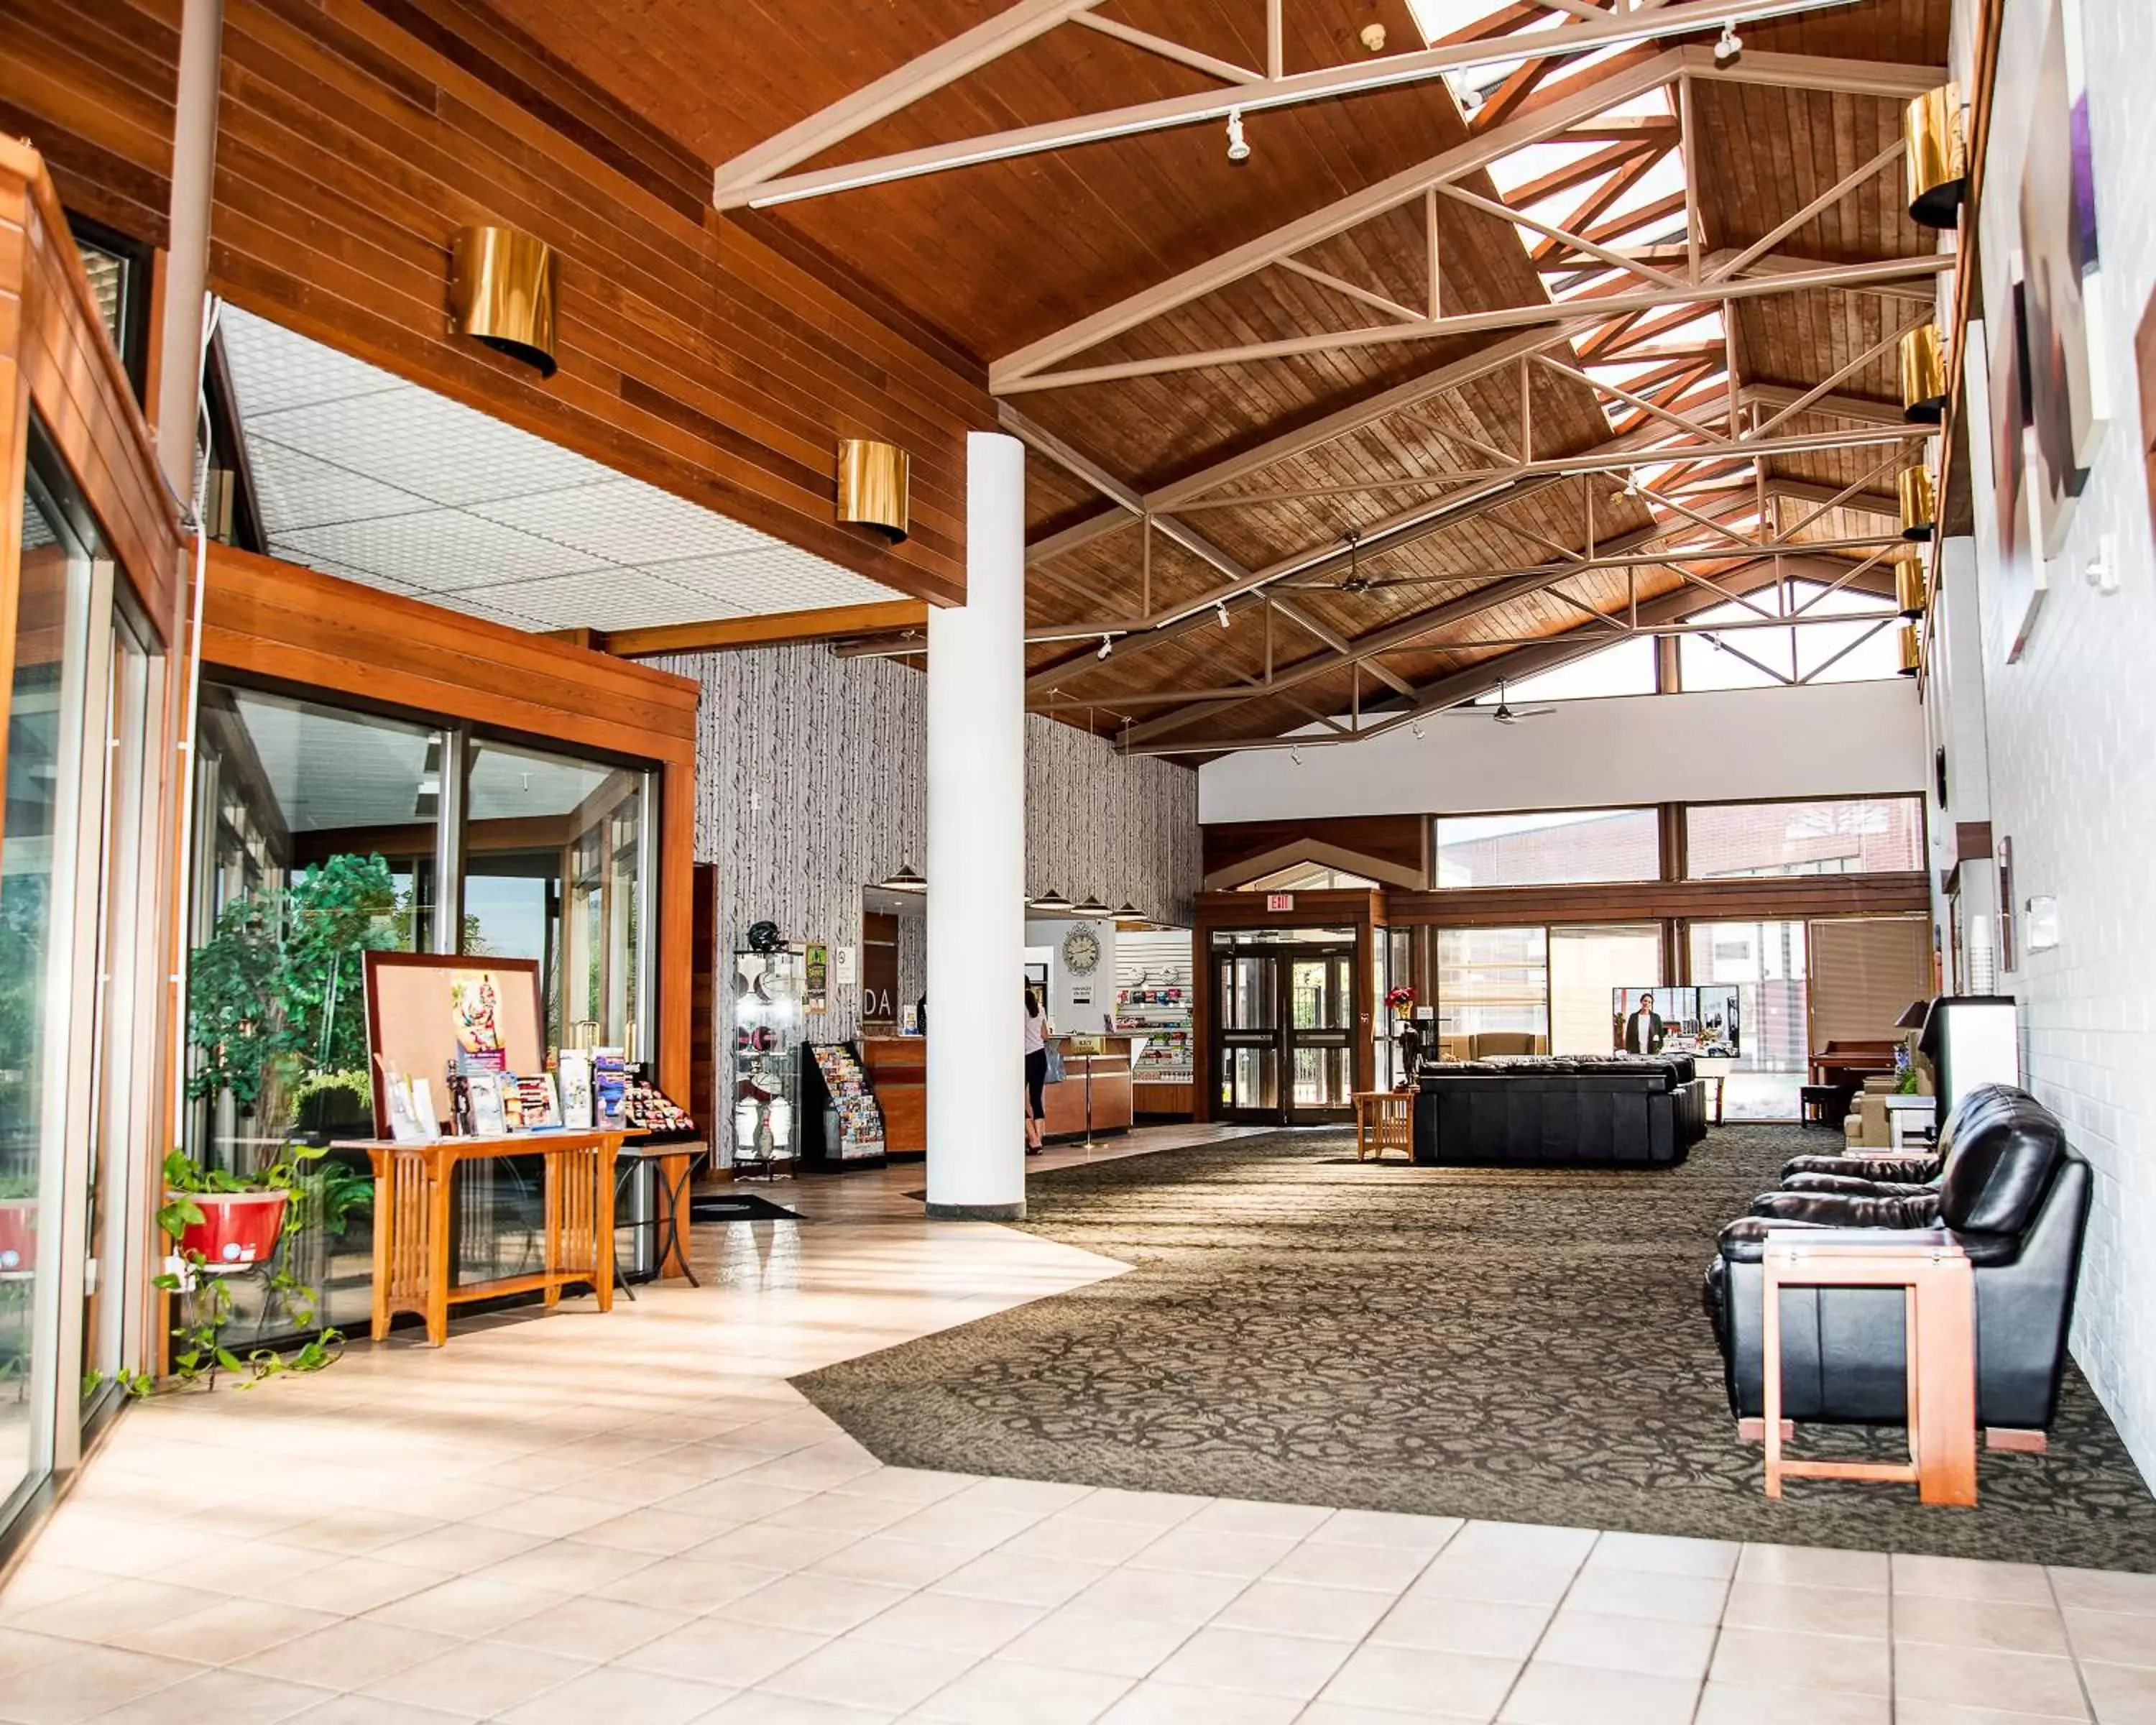 Lobby or reception in Ramada by Wyndham Cedar City